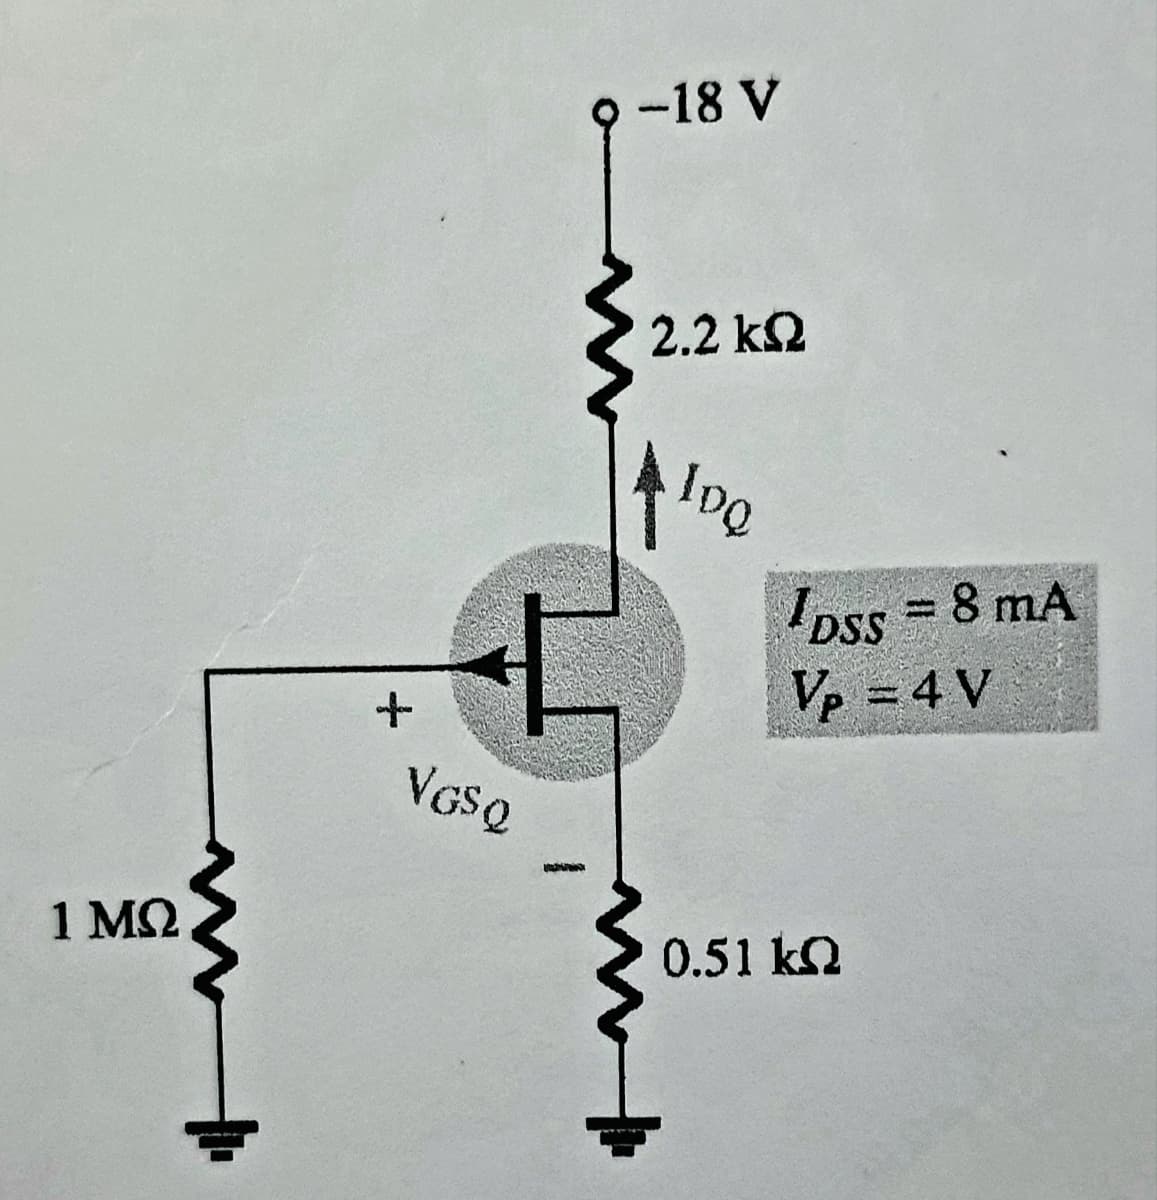 1 ΜΩ
+
E
VGSQ
-18 V
2.2 ΚΩ
log
DSS = 8 mA
Vp = 4 V
0.51 kQ